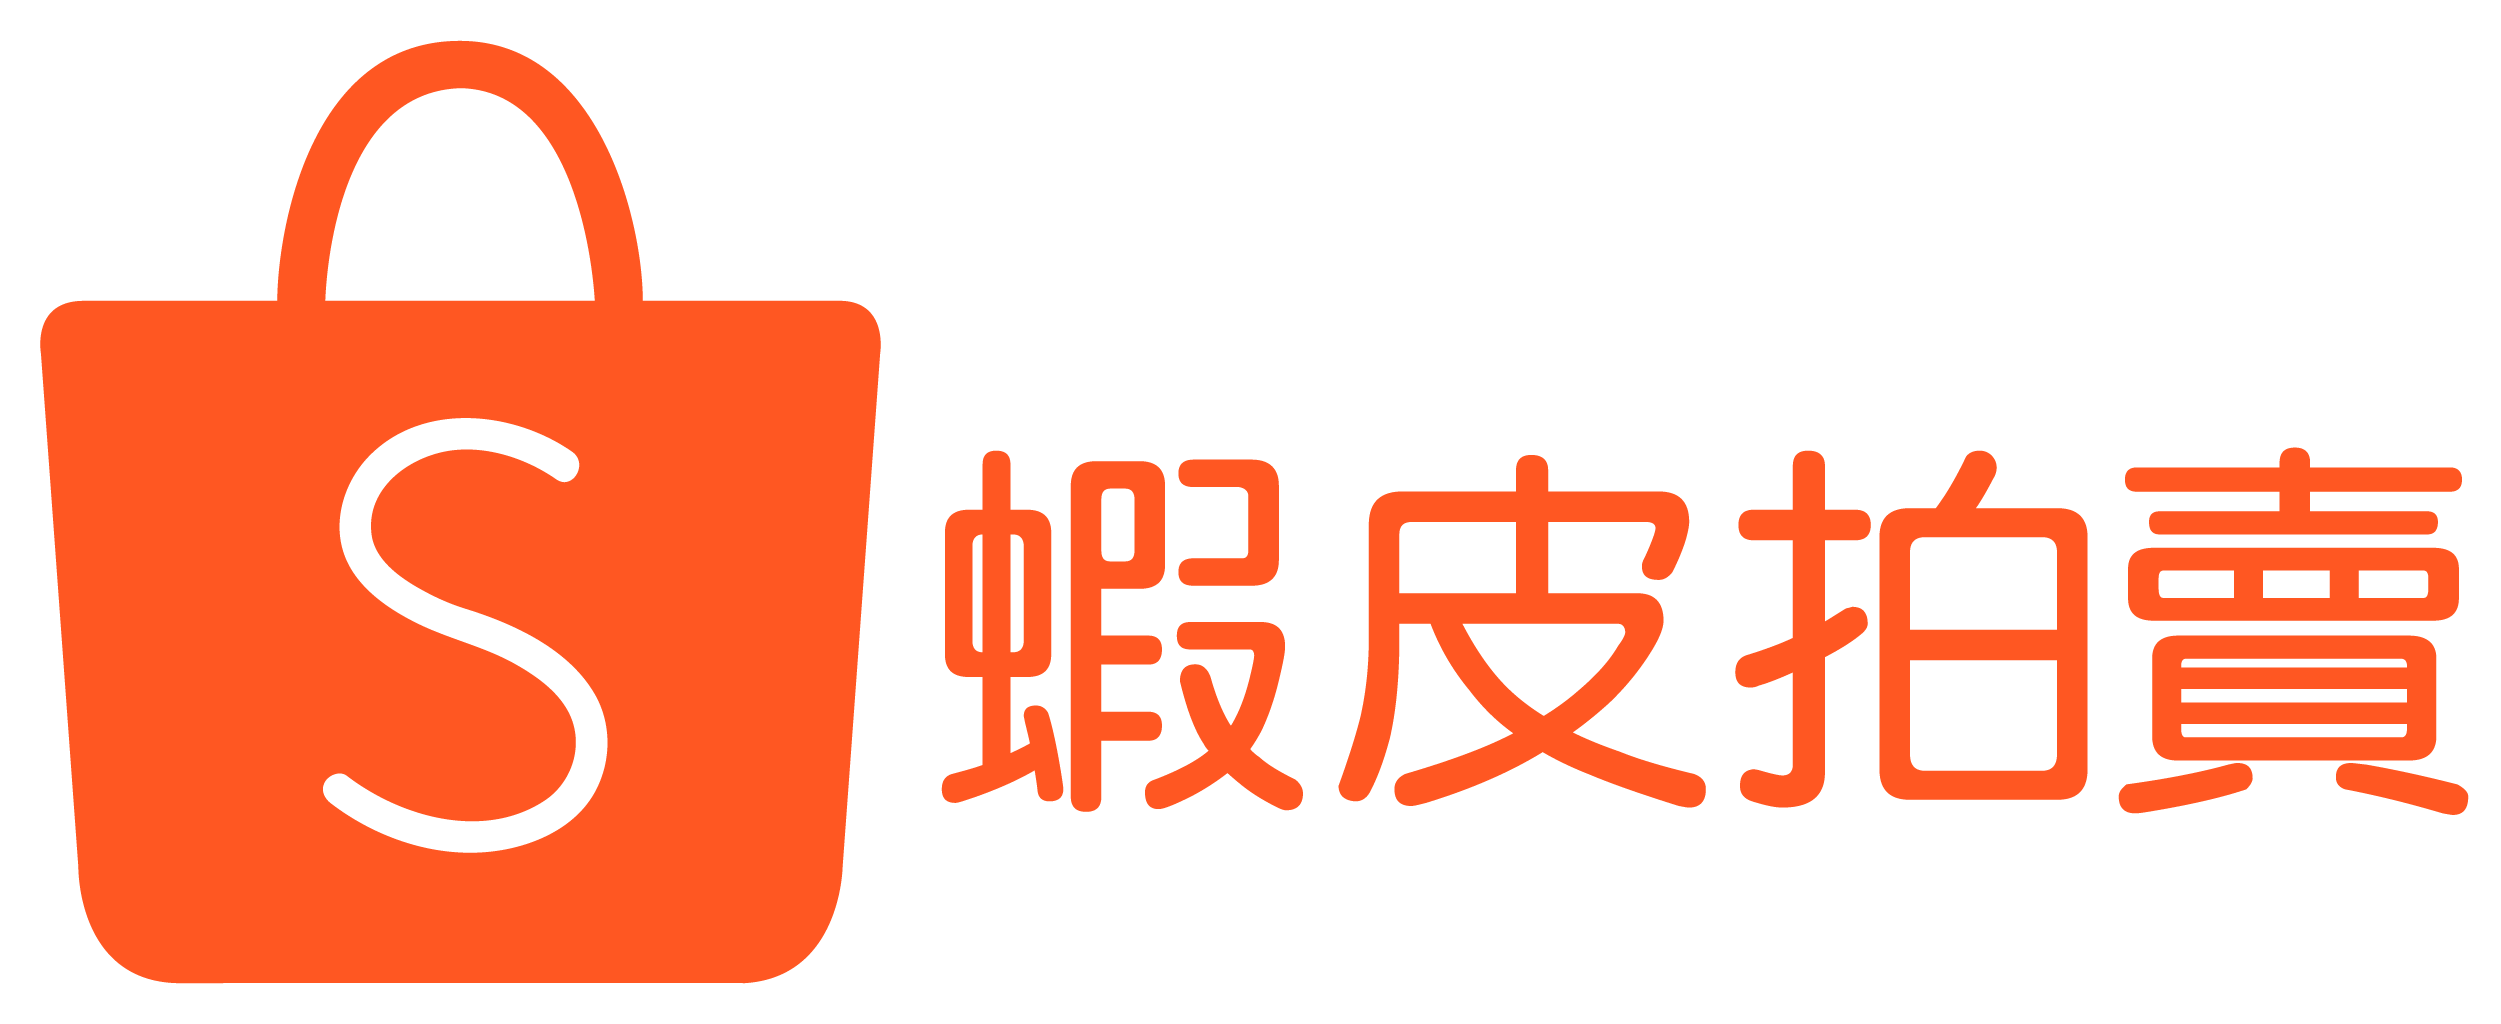 shopee taiwan logo #31426